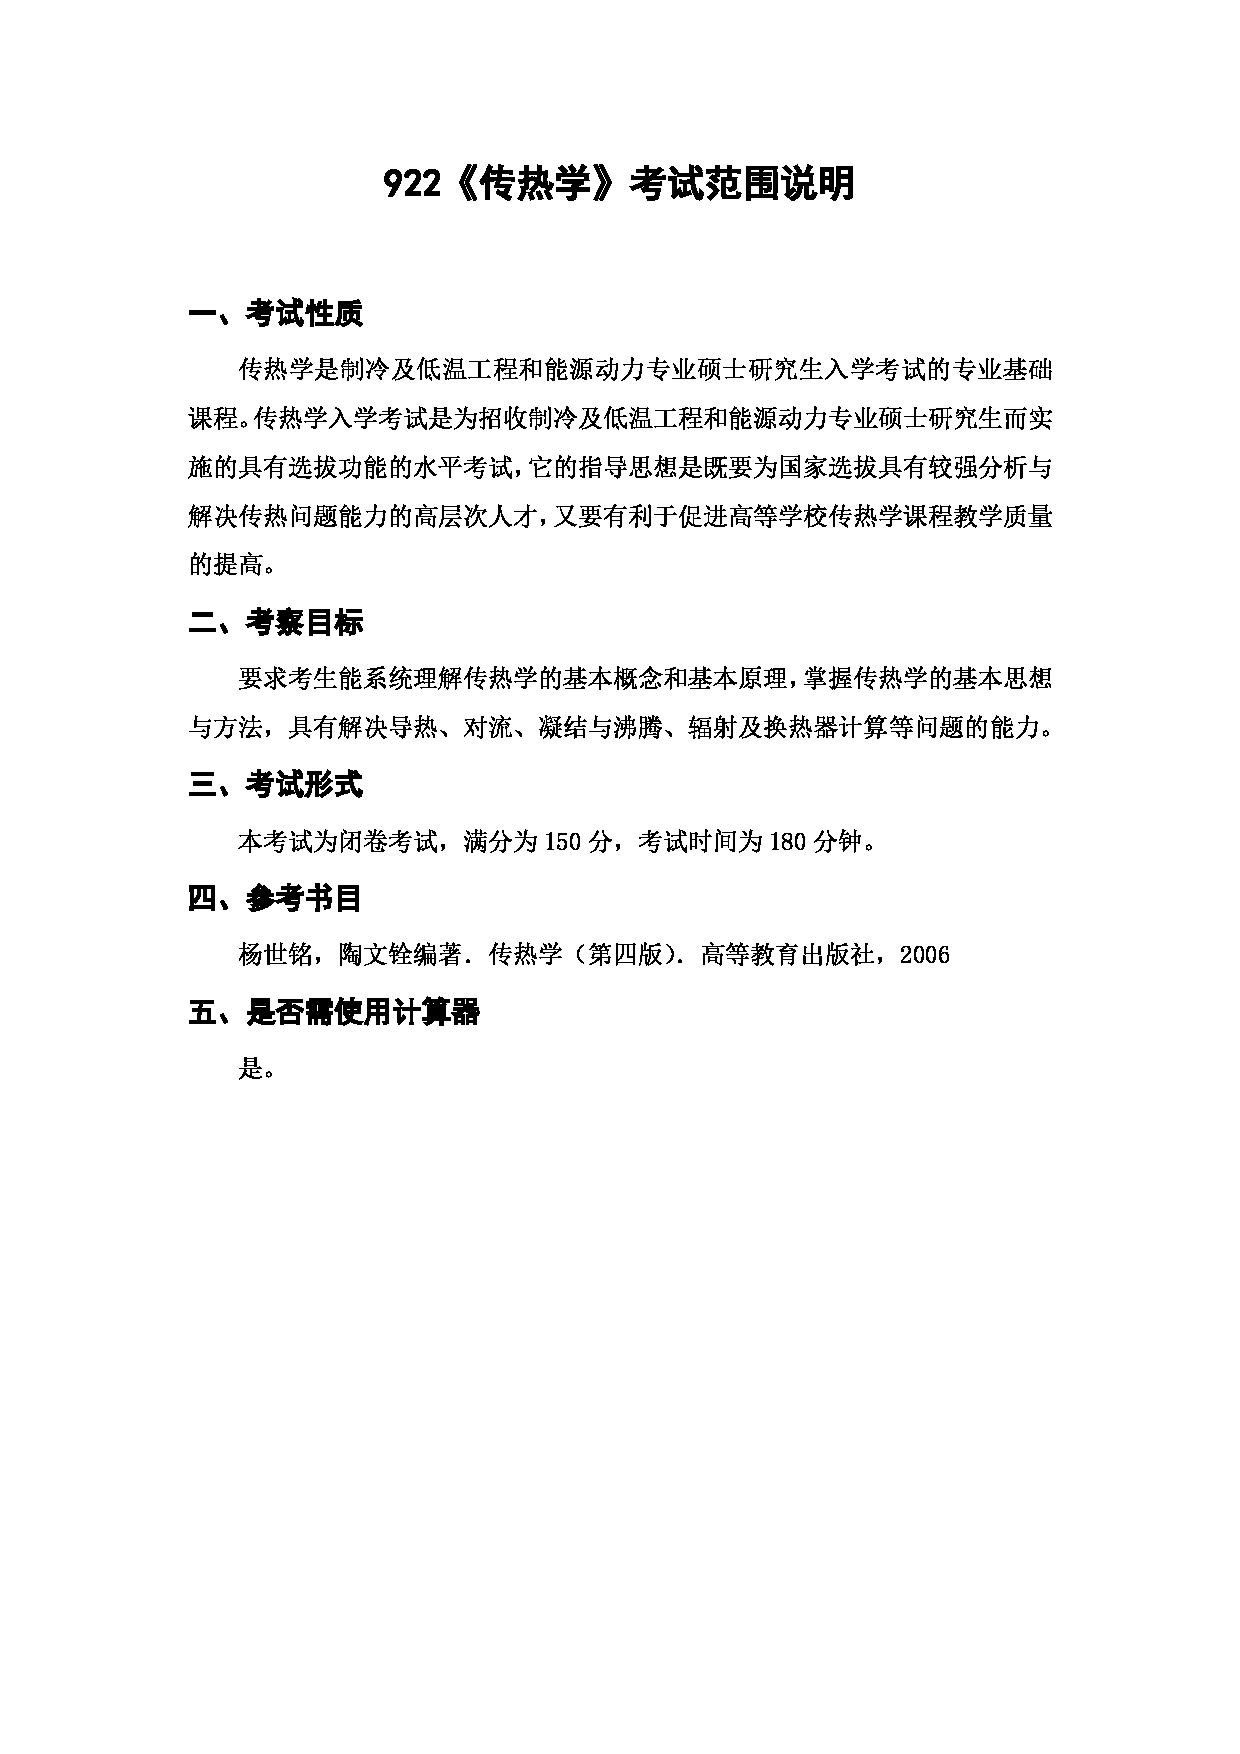 上海海洋大学2023年考研自命题科目 922《传热学》 考试范围第1页